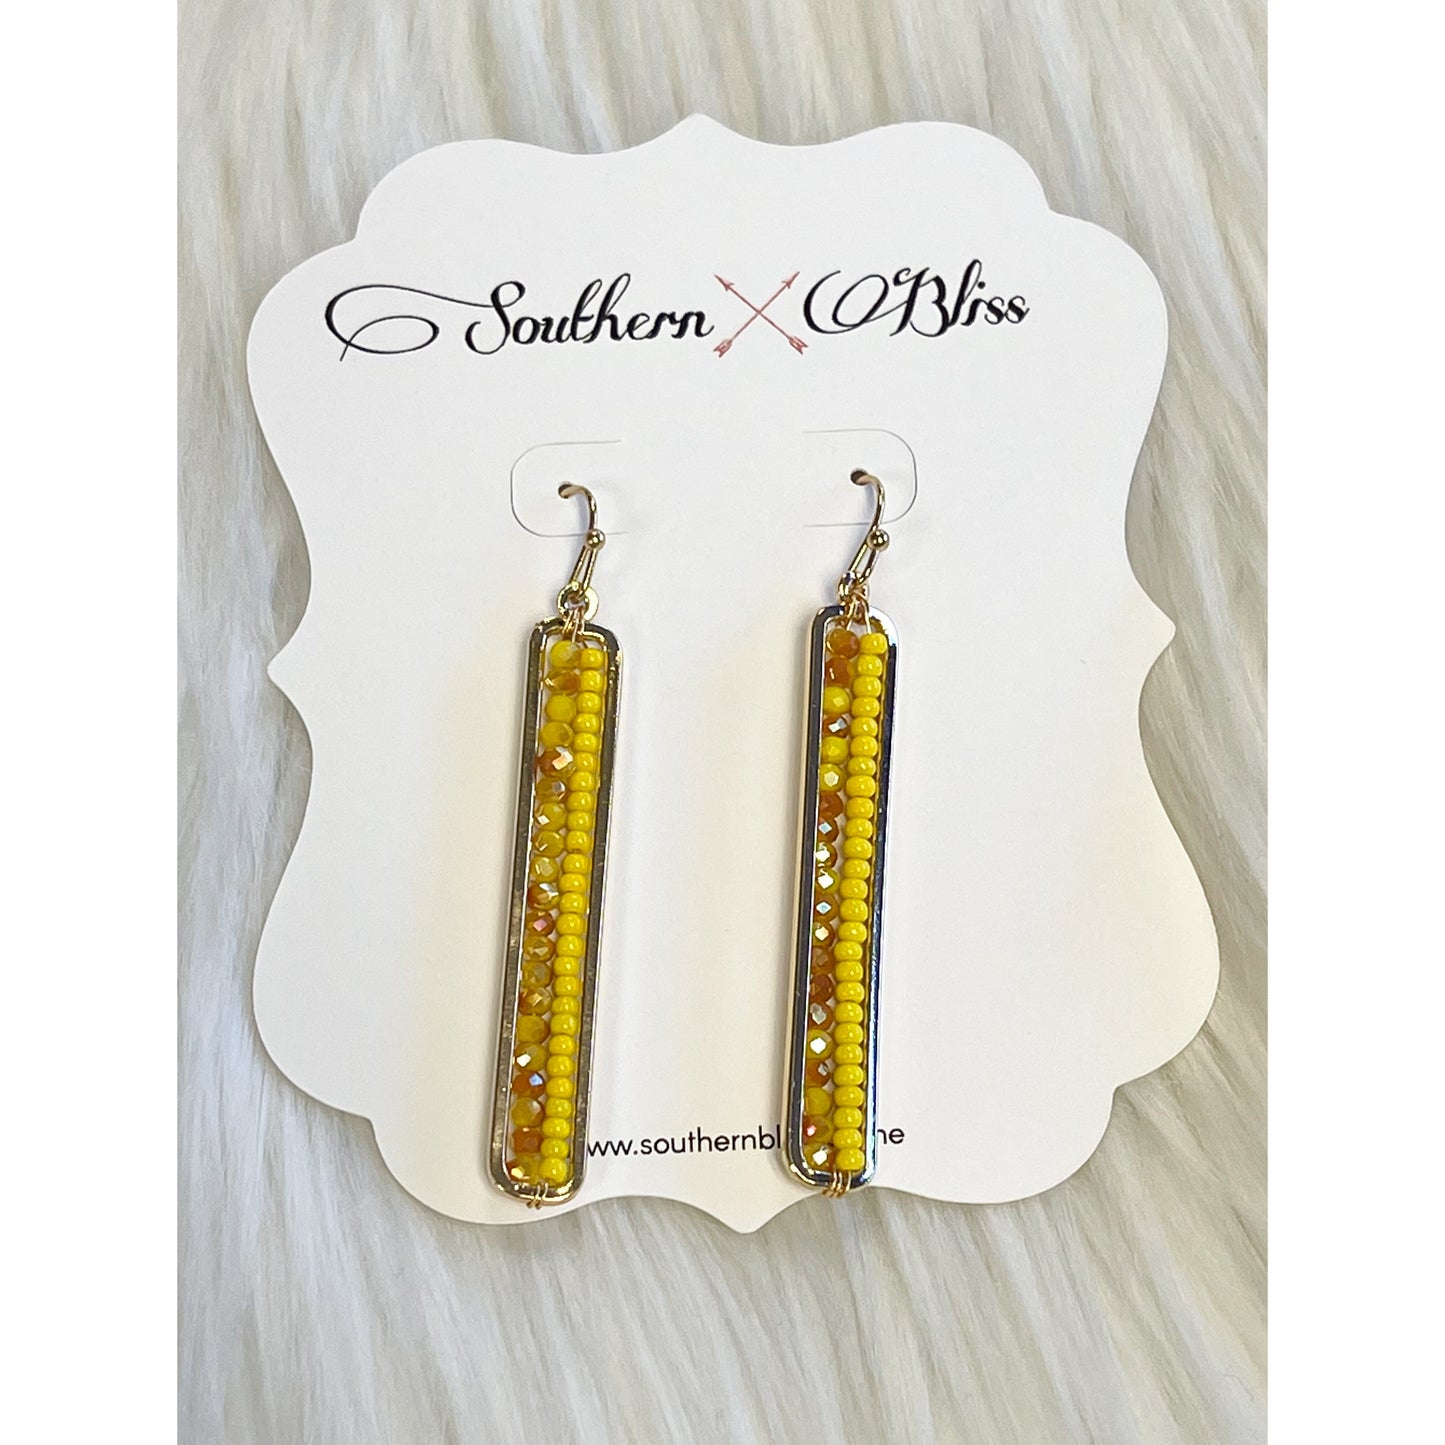 Long beaded earrings in yellow